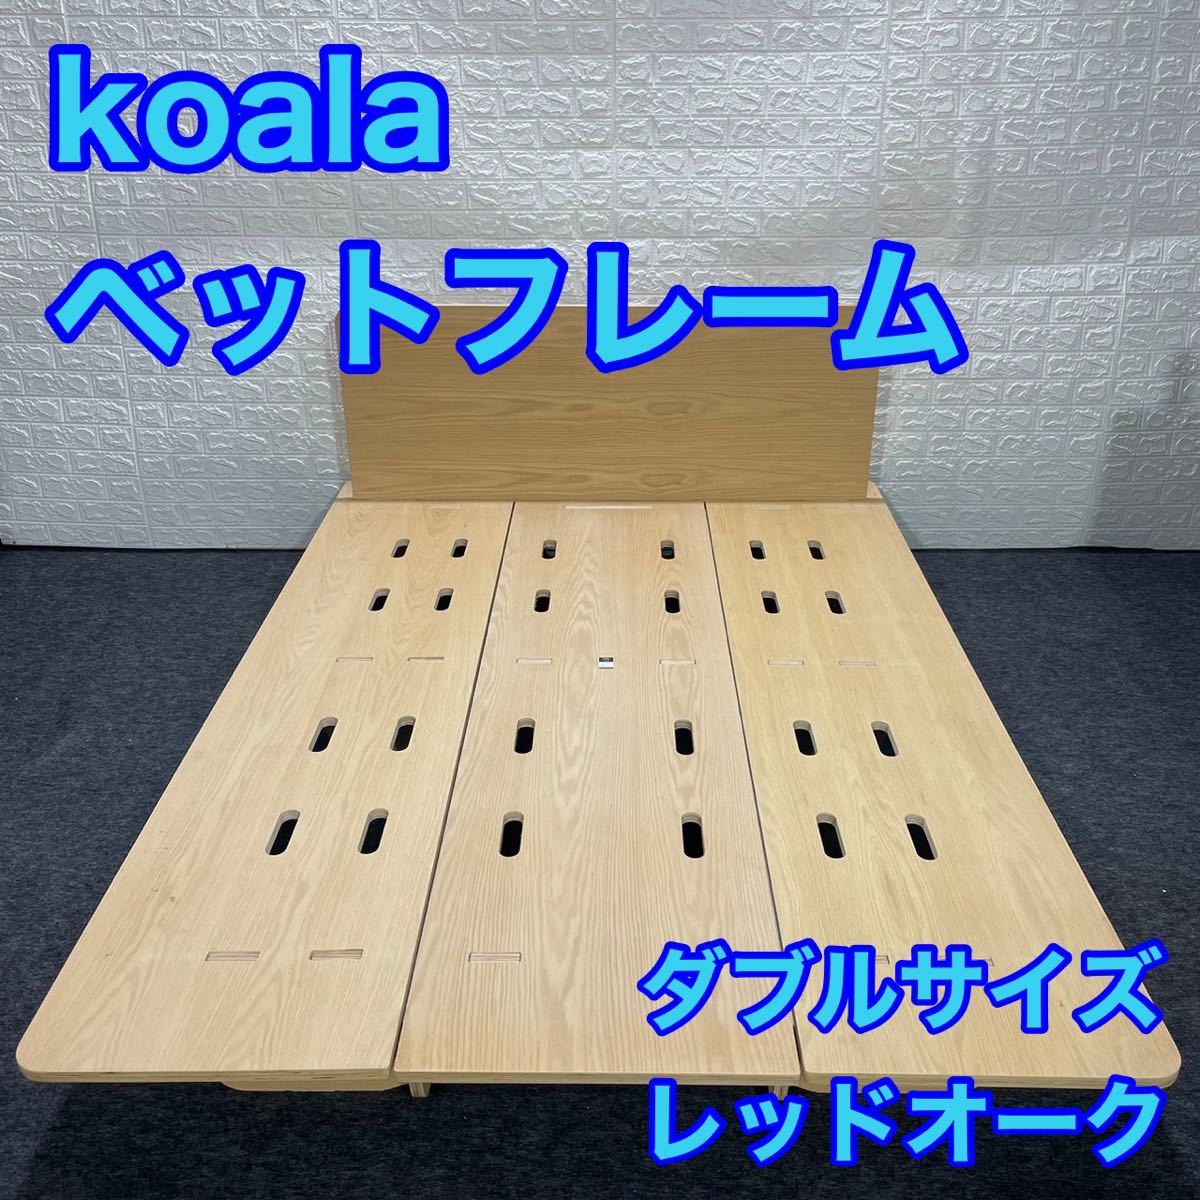 koala コアラ ベッドフレーム ダブルサイズ レッドオーク 組み立て簡単 d1081 木製 天然木